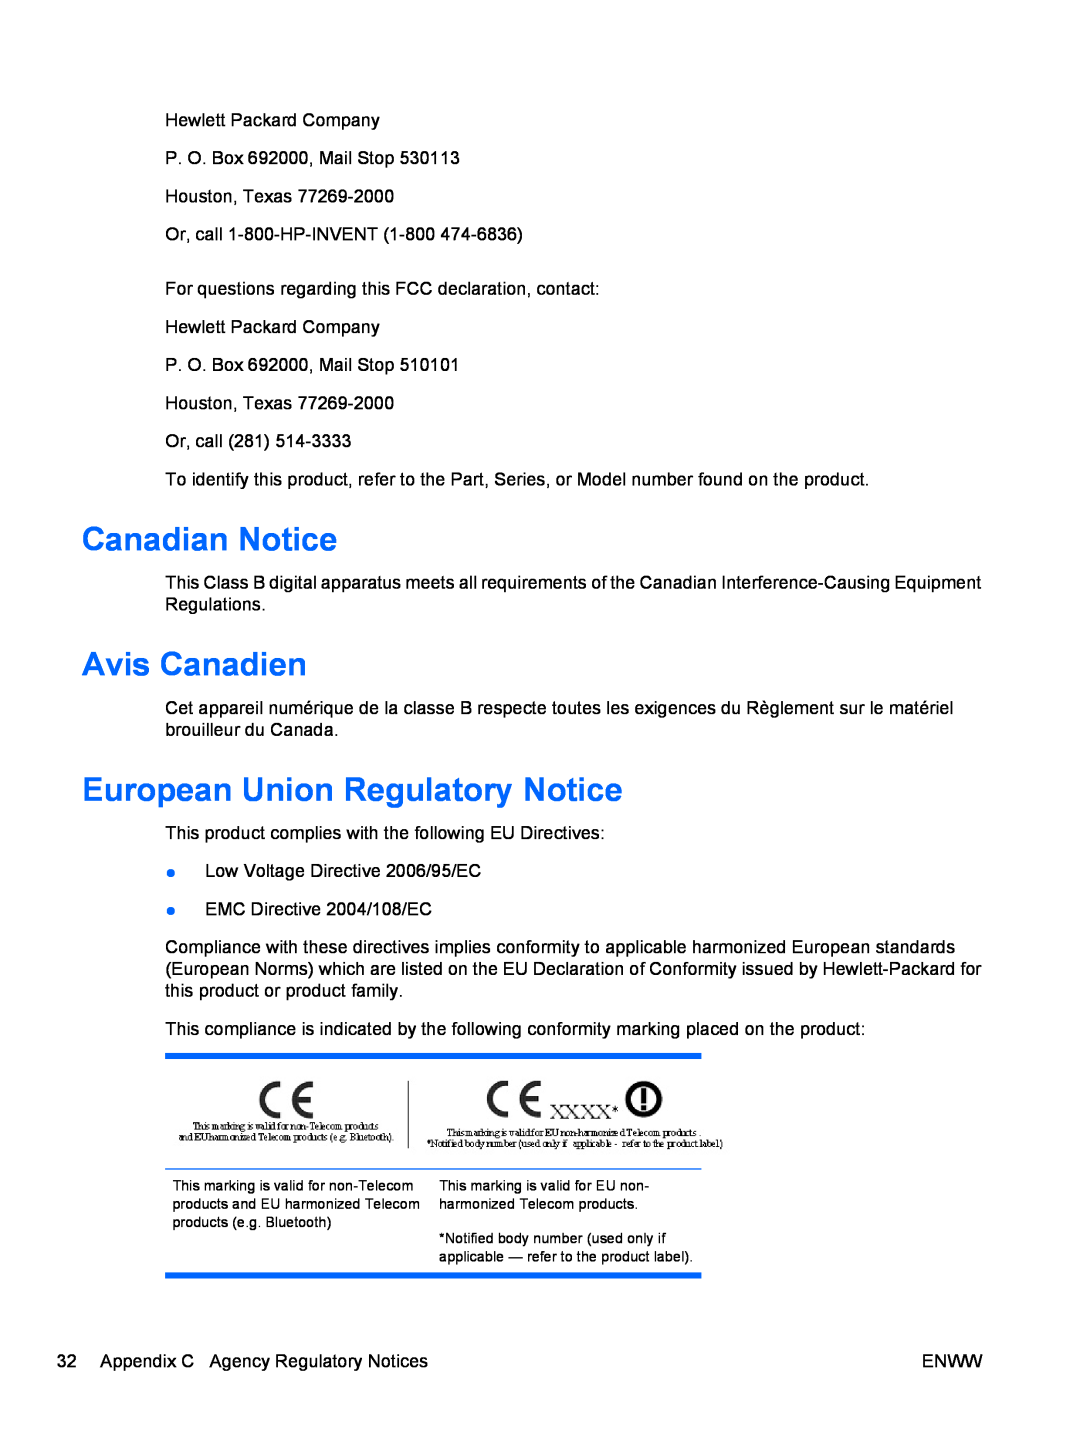 HP Q2010S, Q2210S, Q1910S manual Canadian Notice, Avis Canadien, European Union Regulatory Notice 